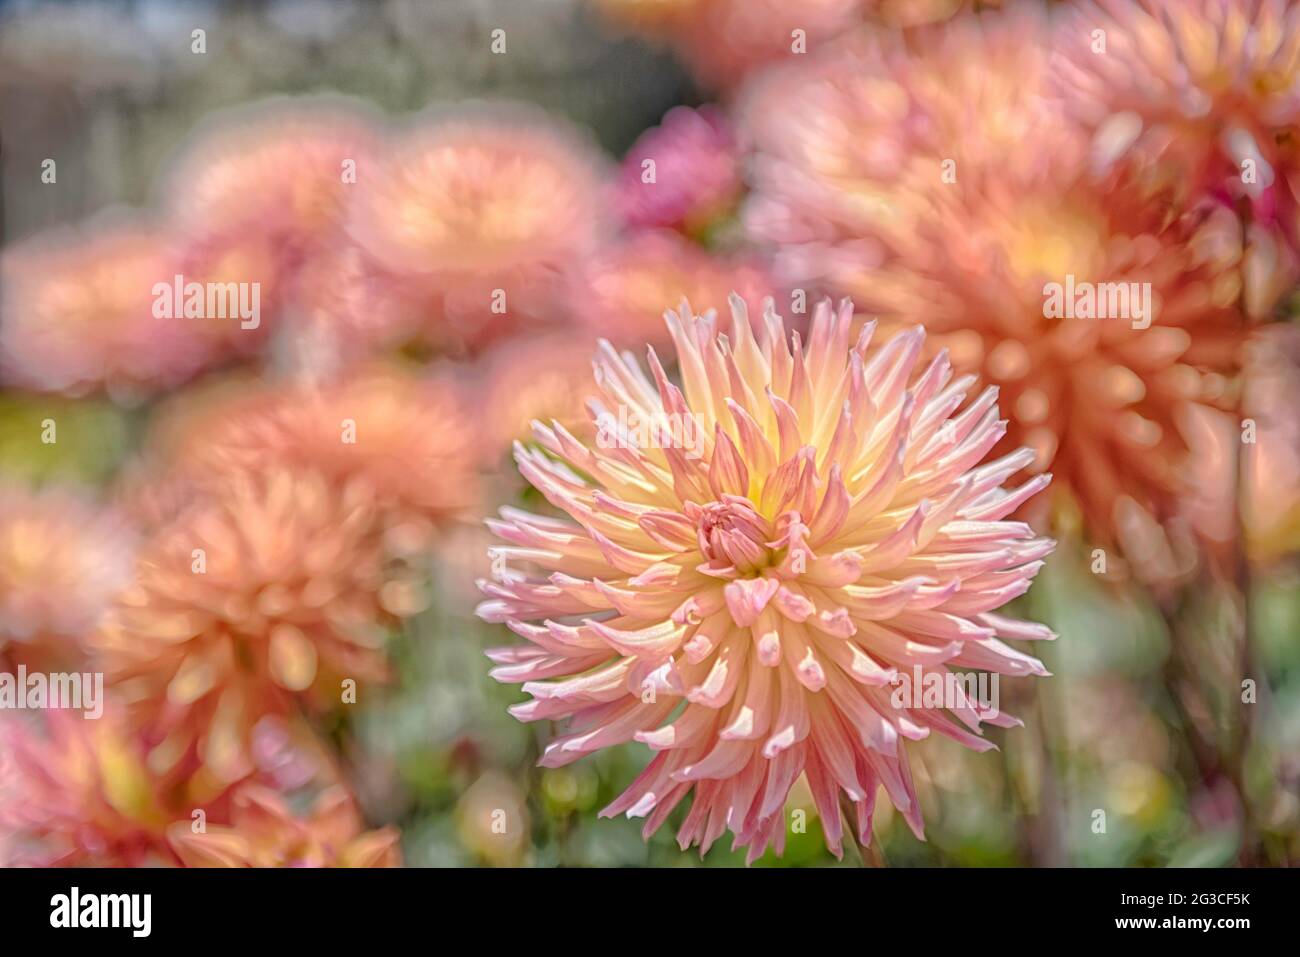 Digitized flowers emphasizing mood over realism. Stock Photo